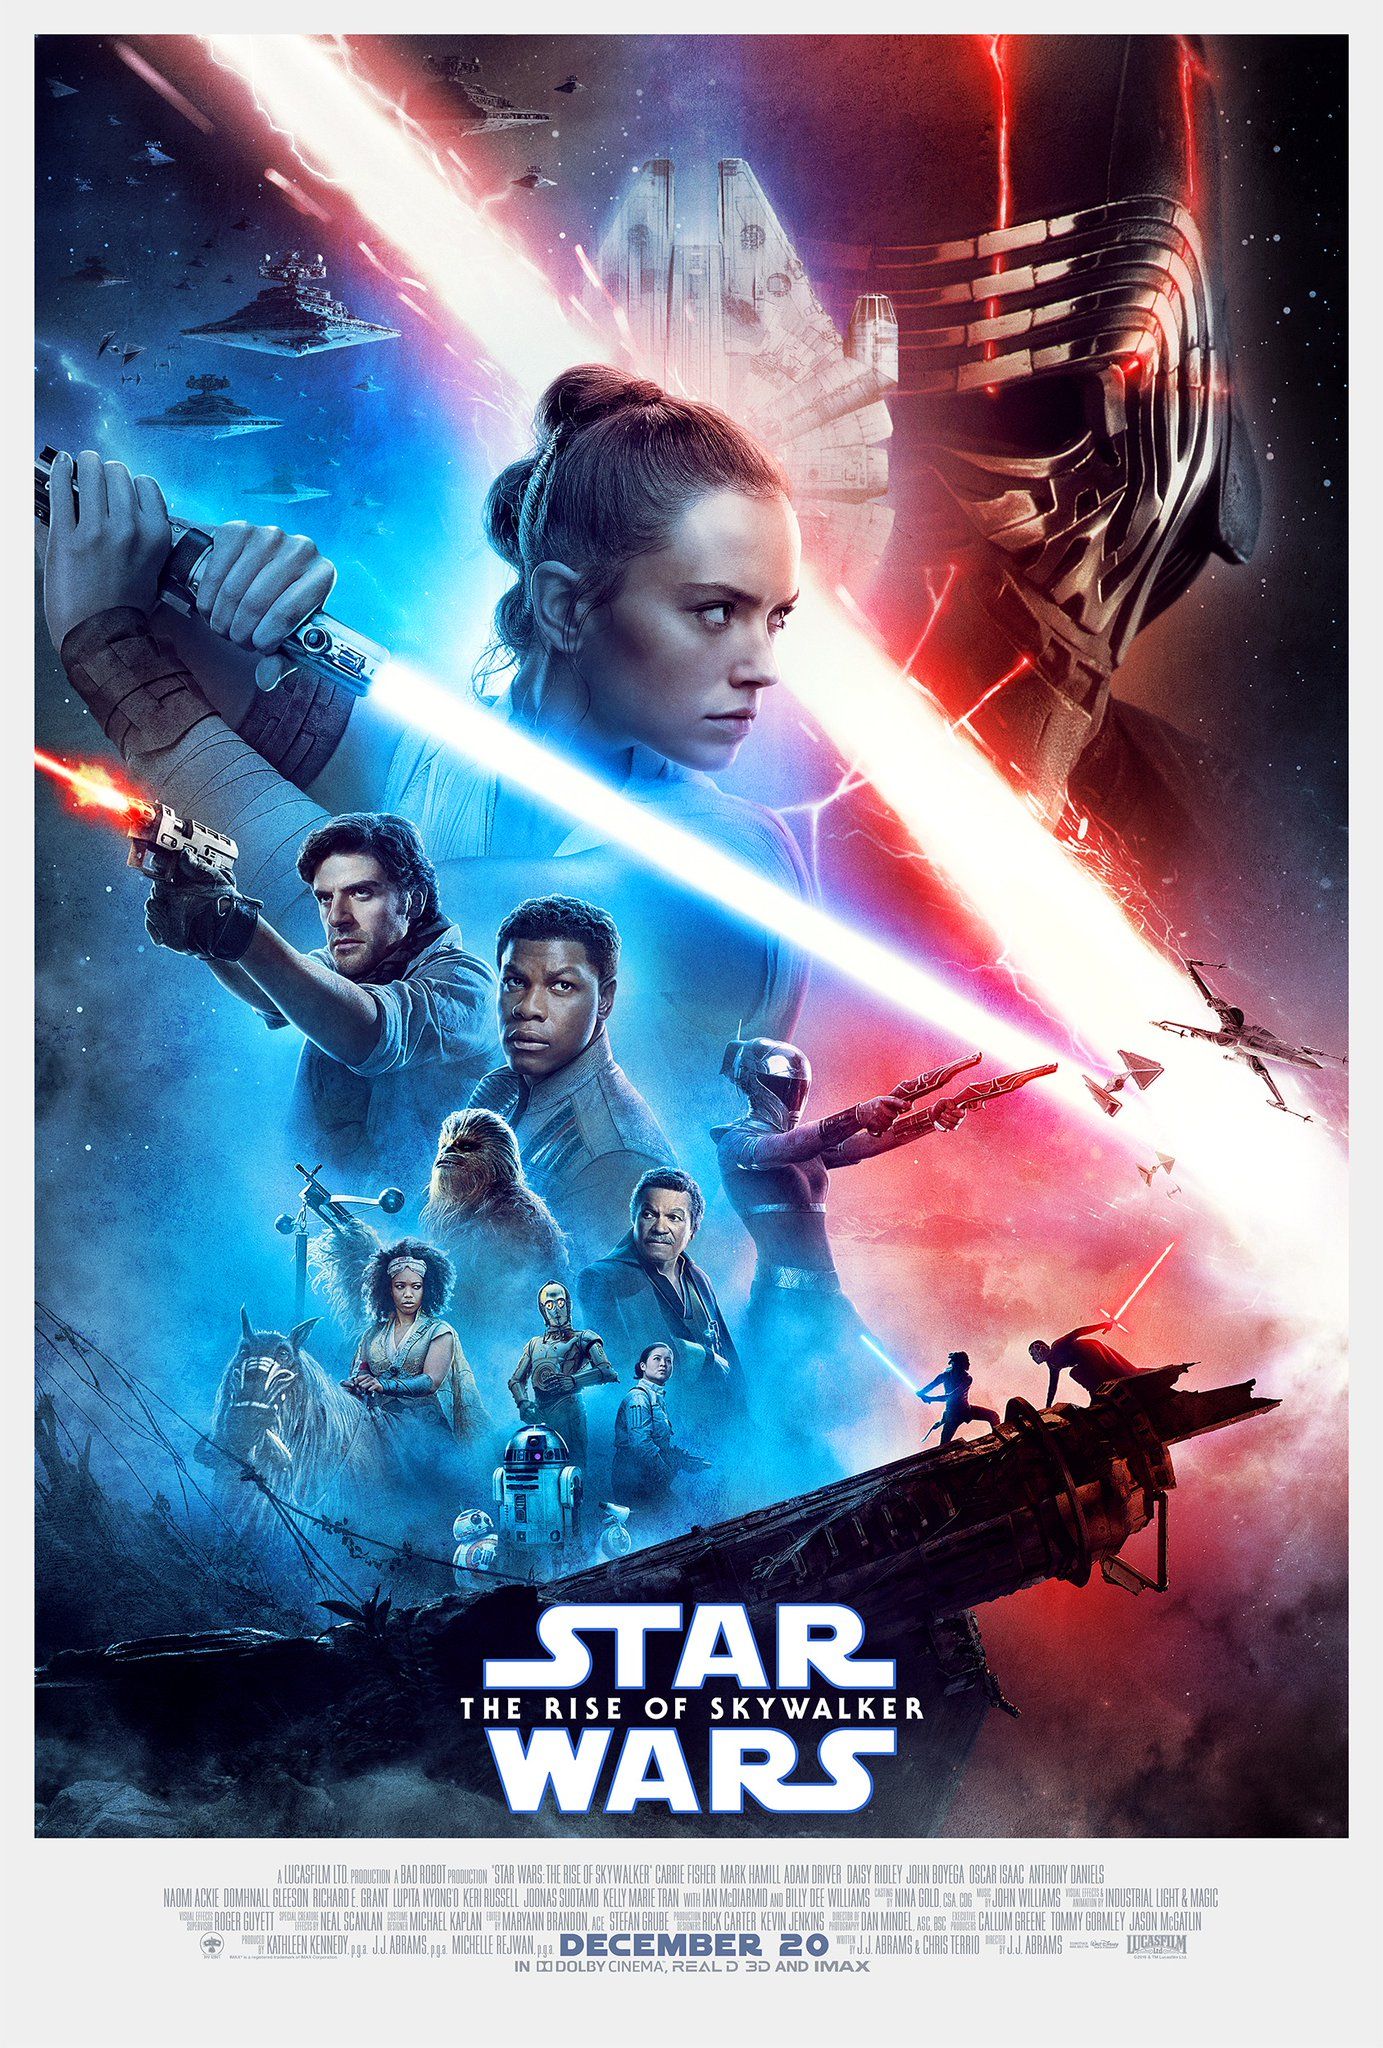 Poster for Star Wars Episode Episode 9 the Rise of Skywalker